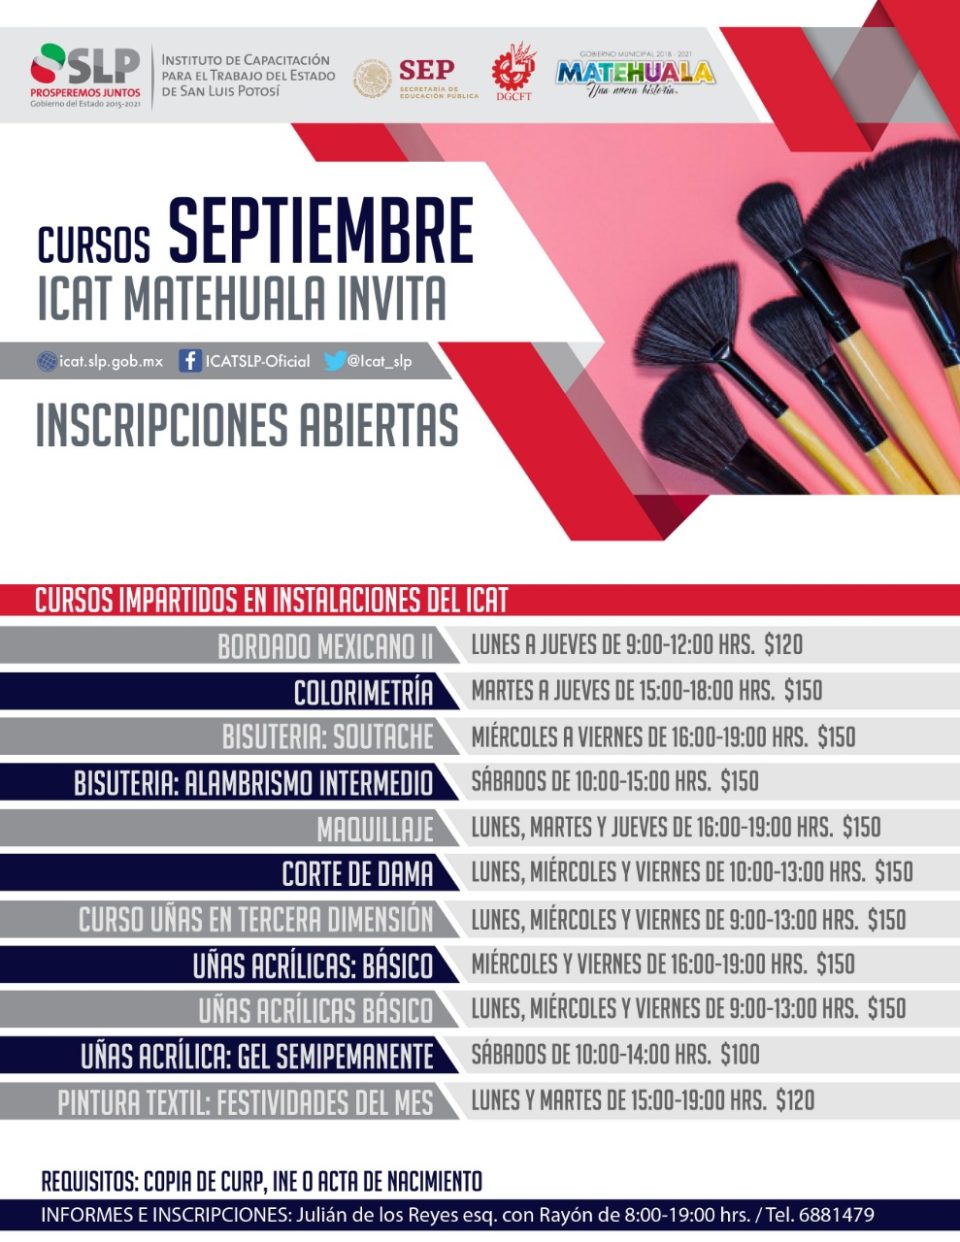 ICAT invita a cursos en Cedral y Matehuala 